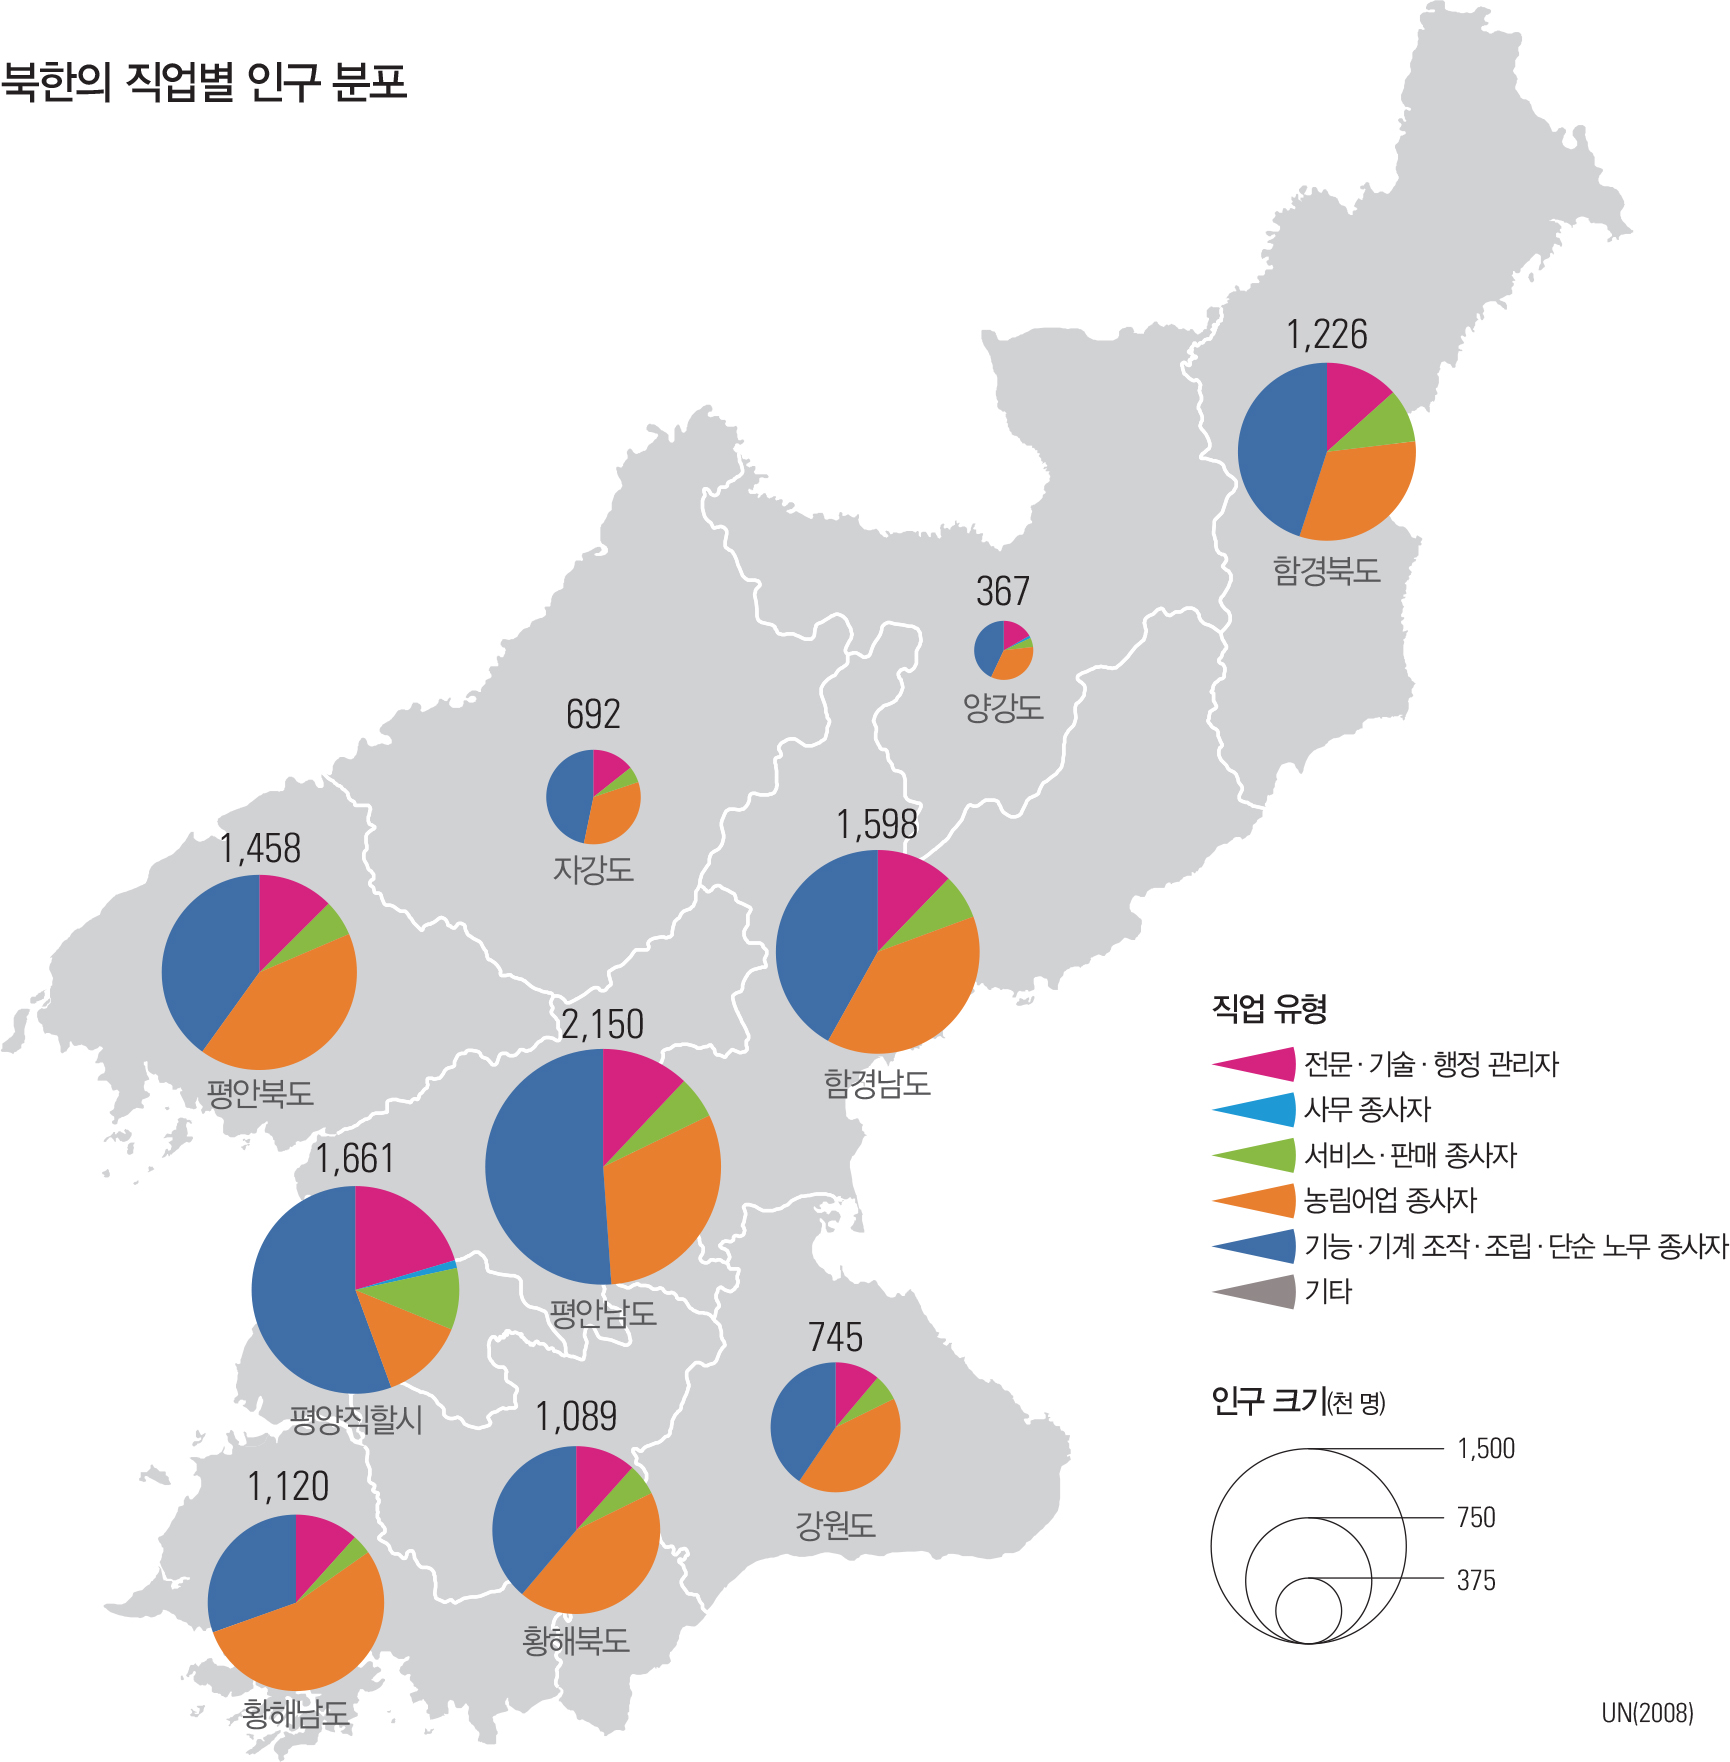 북한의 직업별 인구 분포